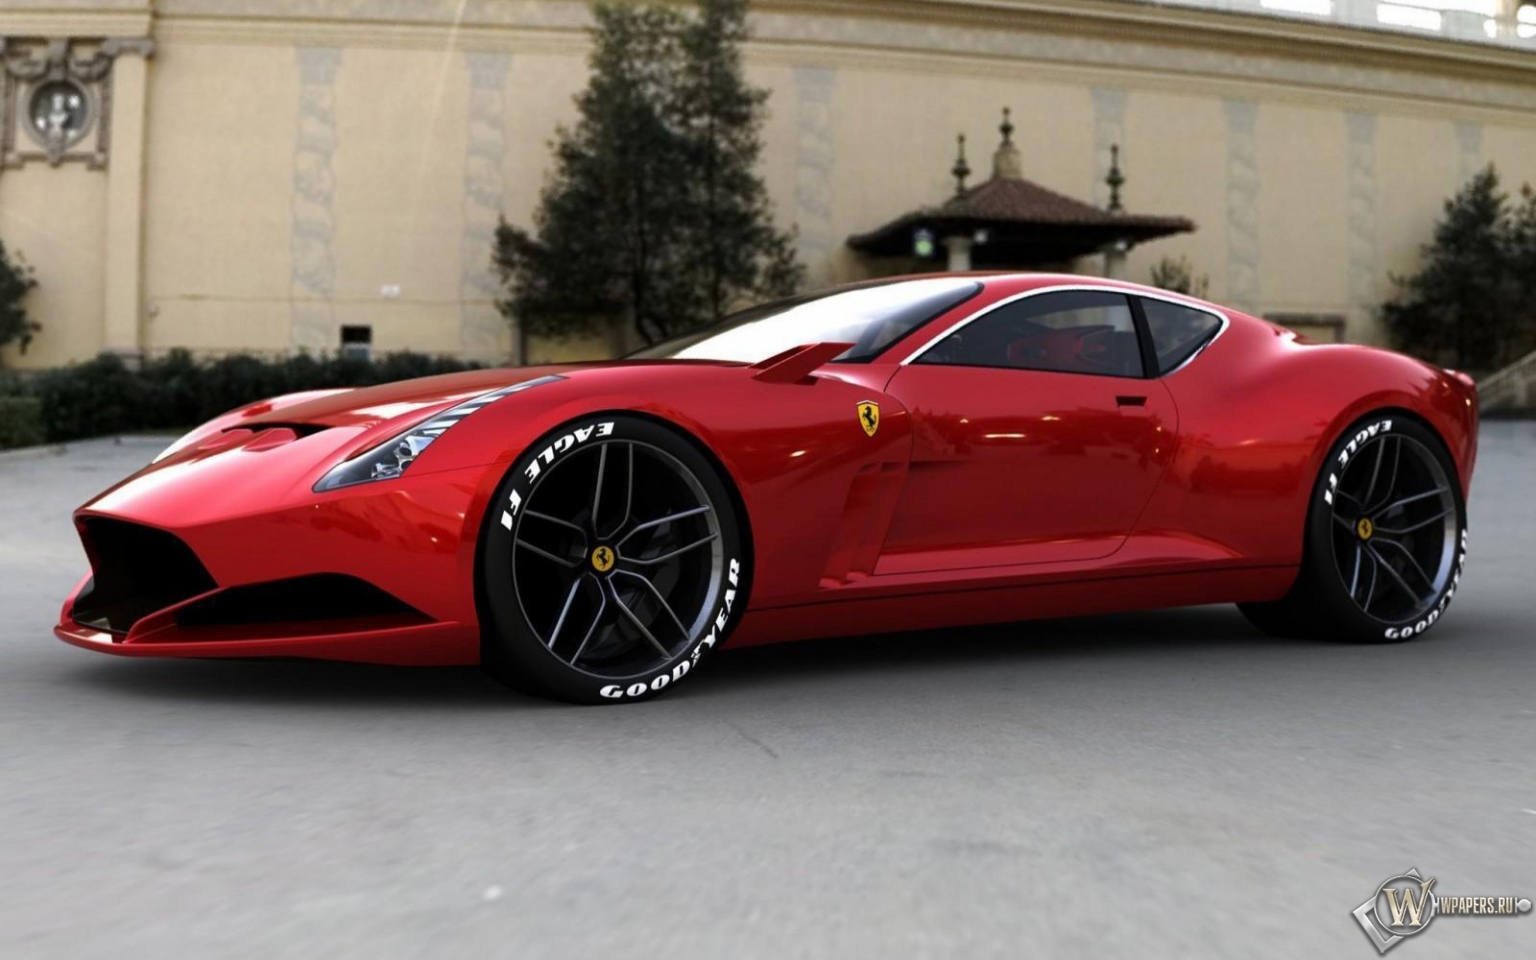 Ferrari-612-GTO-concept 1536x960